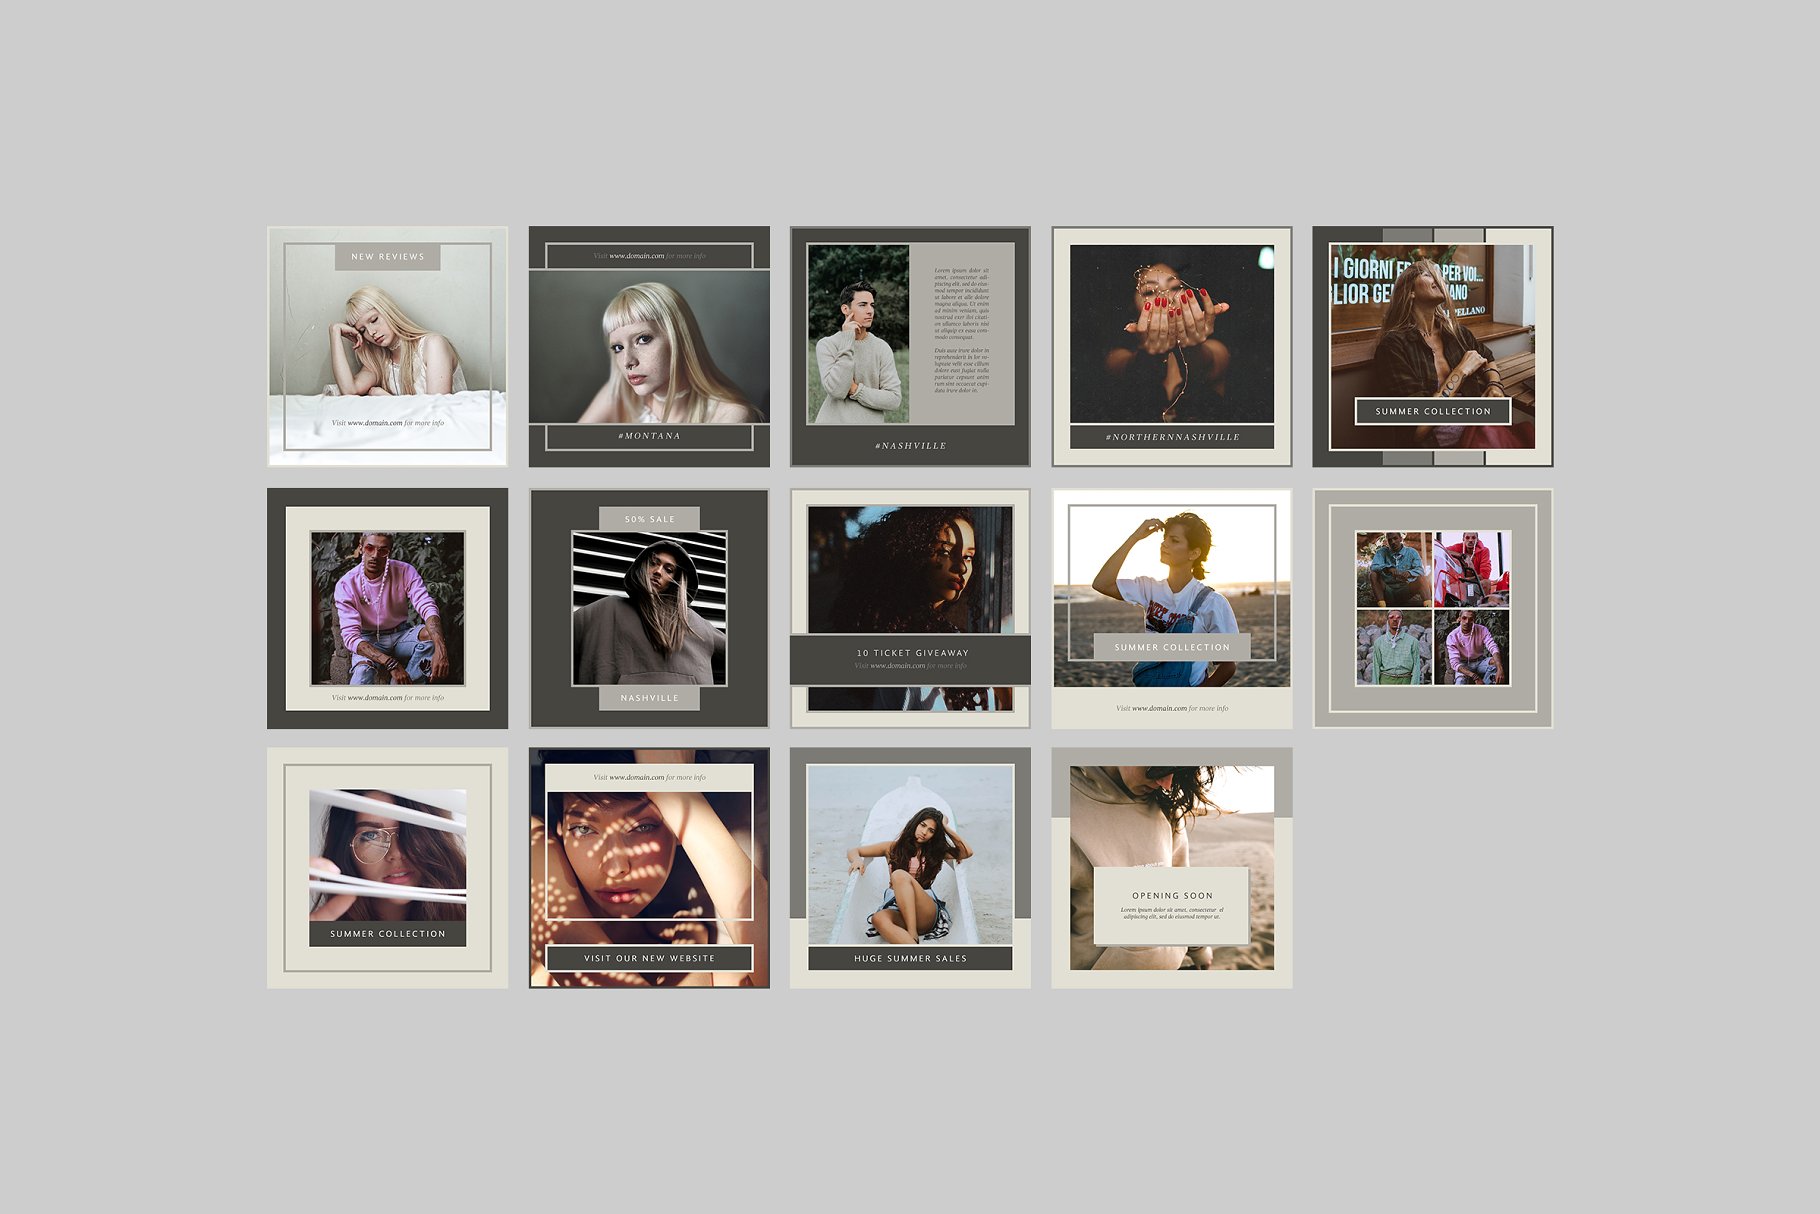 时尚模特摄影主题社交媒体贴图模板16设计网精选 Nashville Social Media Templates插图(6)